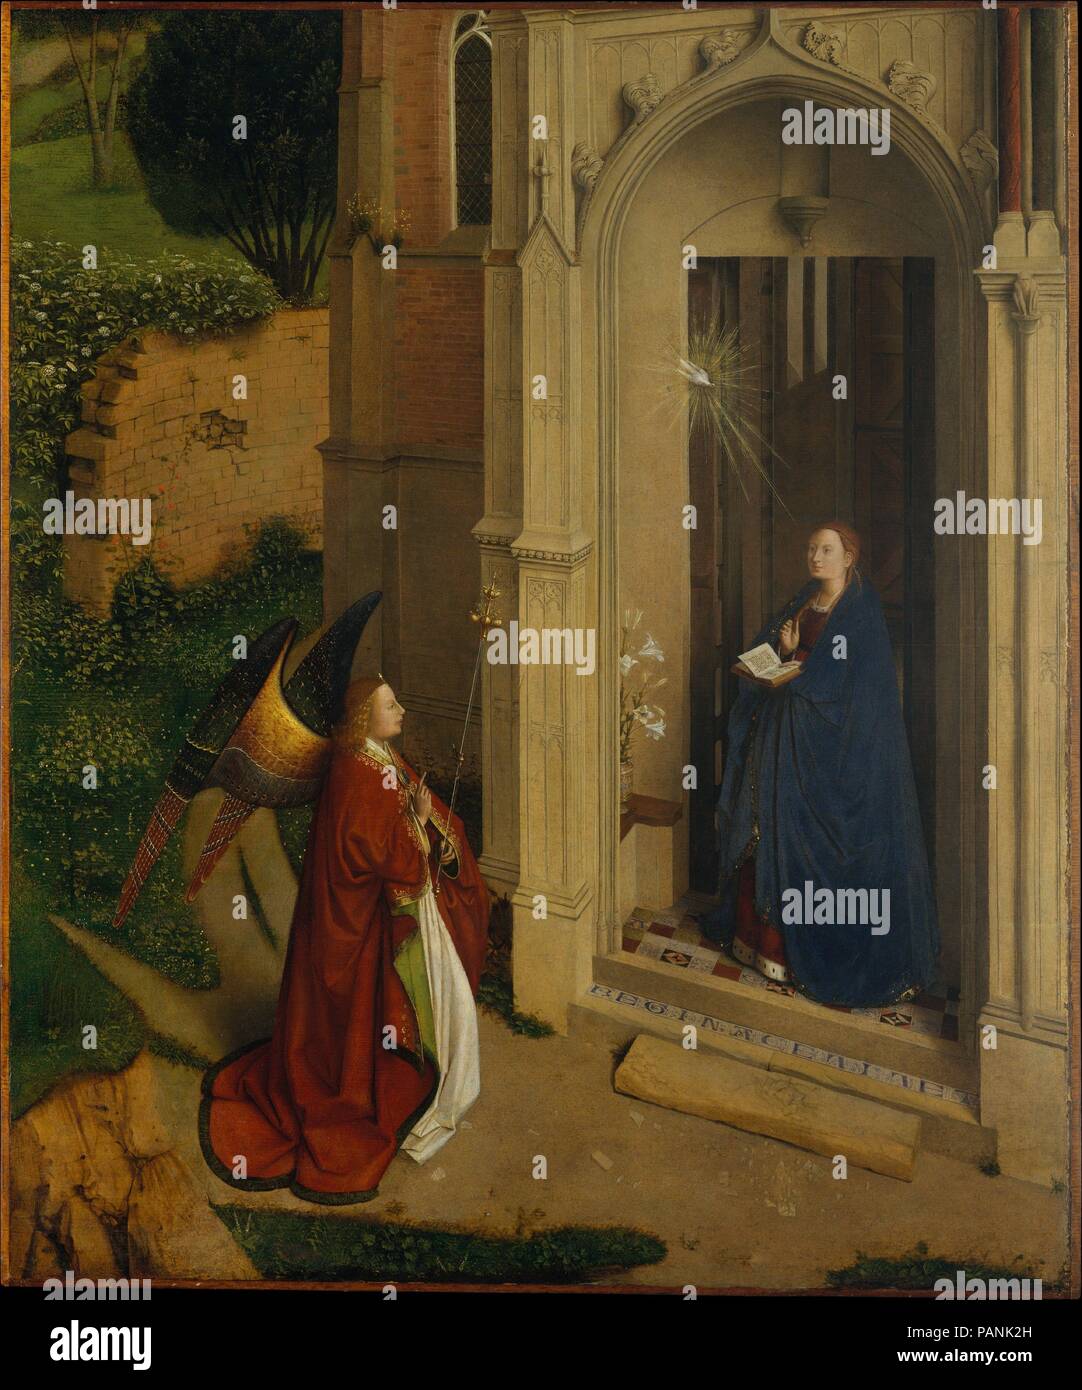 L'Annonciation. Artiste : attribuée à Petrus Christus (, Russisch Baarle-Hertog (Baerle-Duc), actif en 1444-mort 1475/76 Bruges). Dimensions : Hors tout 31 x 25 7/8 in. (78,7 x 65,7 cm) ; surface peinte 30 1/2 x 25 1/4 in. (77,5 x 64,1 cm). Date : ca. 1450. Cette Annonciation est exceptionnelle pour son oiseau, et en plein air. À l'abri dans l'embrasure d'une église et accueillis par Gabriel, Marie est présentée non seulement comme le destinataire du message de l'Incarnation, mais aussi comme la personnification de l'Église ( <i >Ecclesia </i >). L'architecture, qui est partie romane (à droite) et Banque D'Images